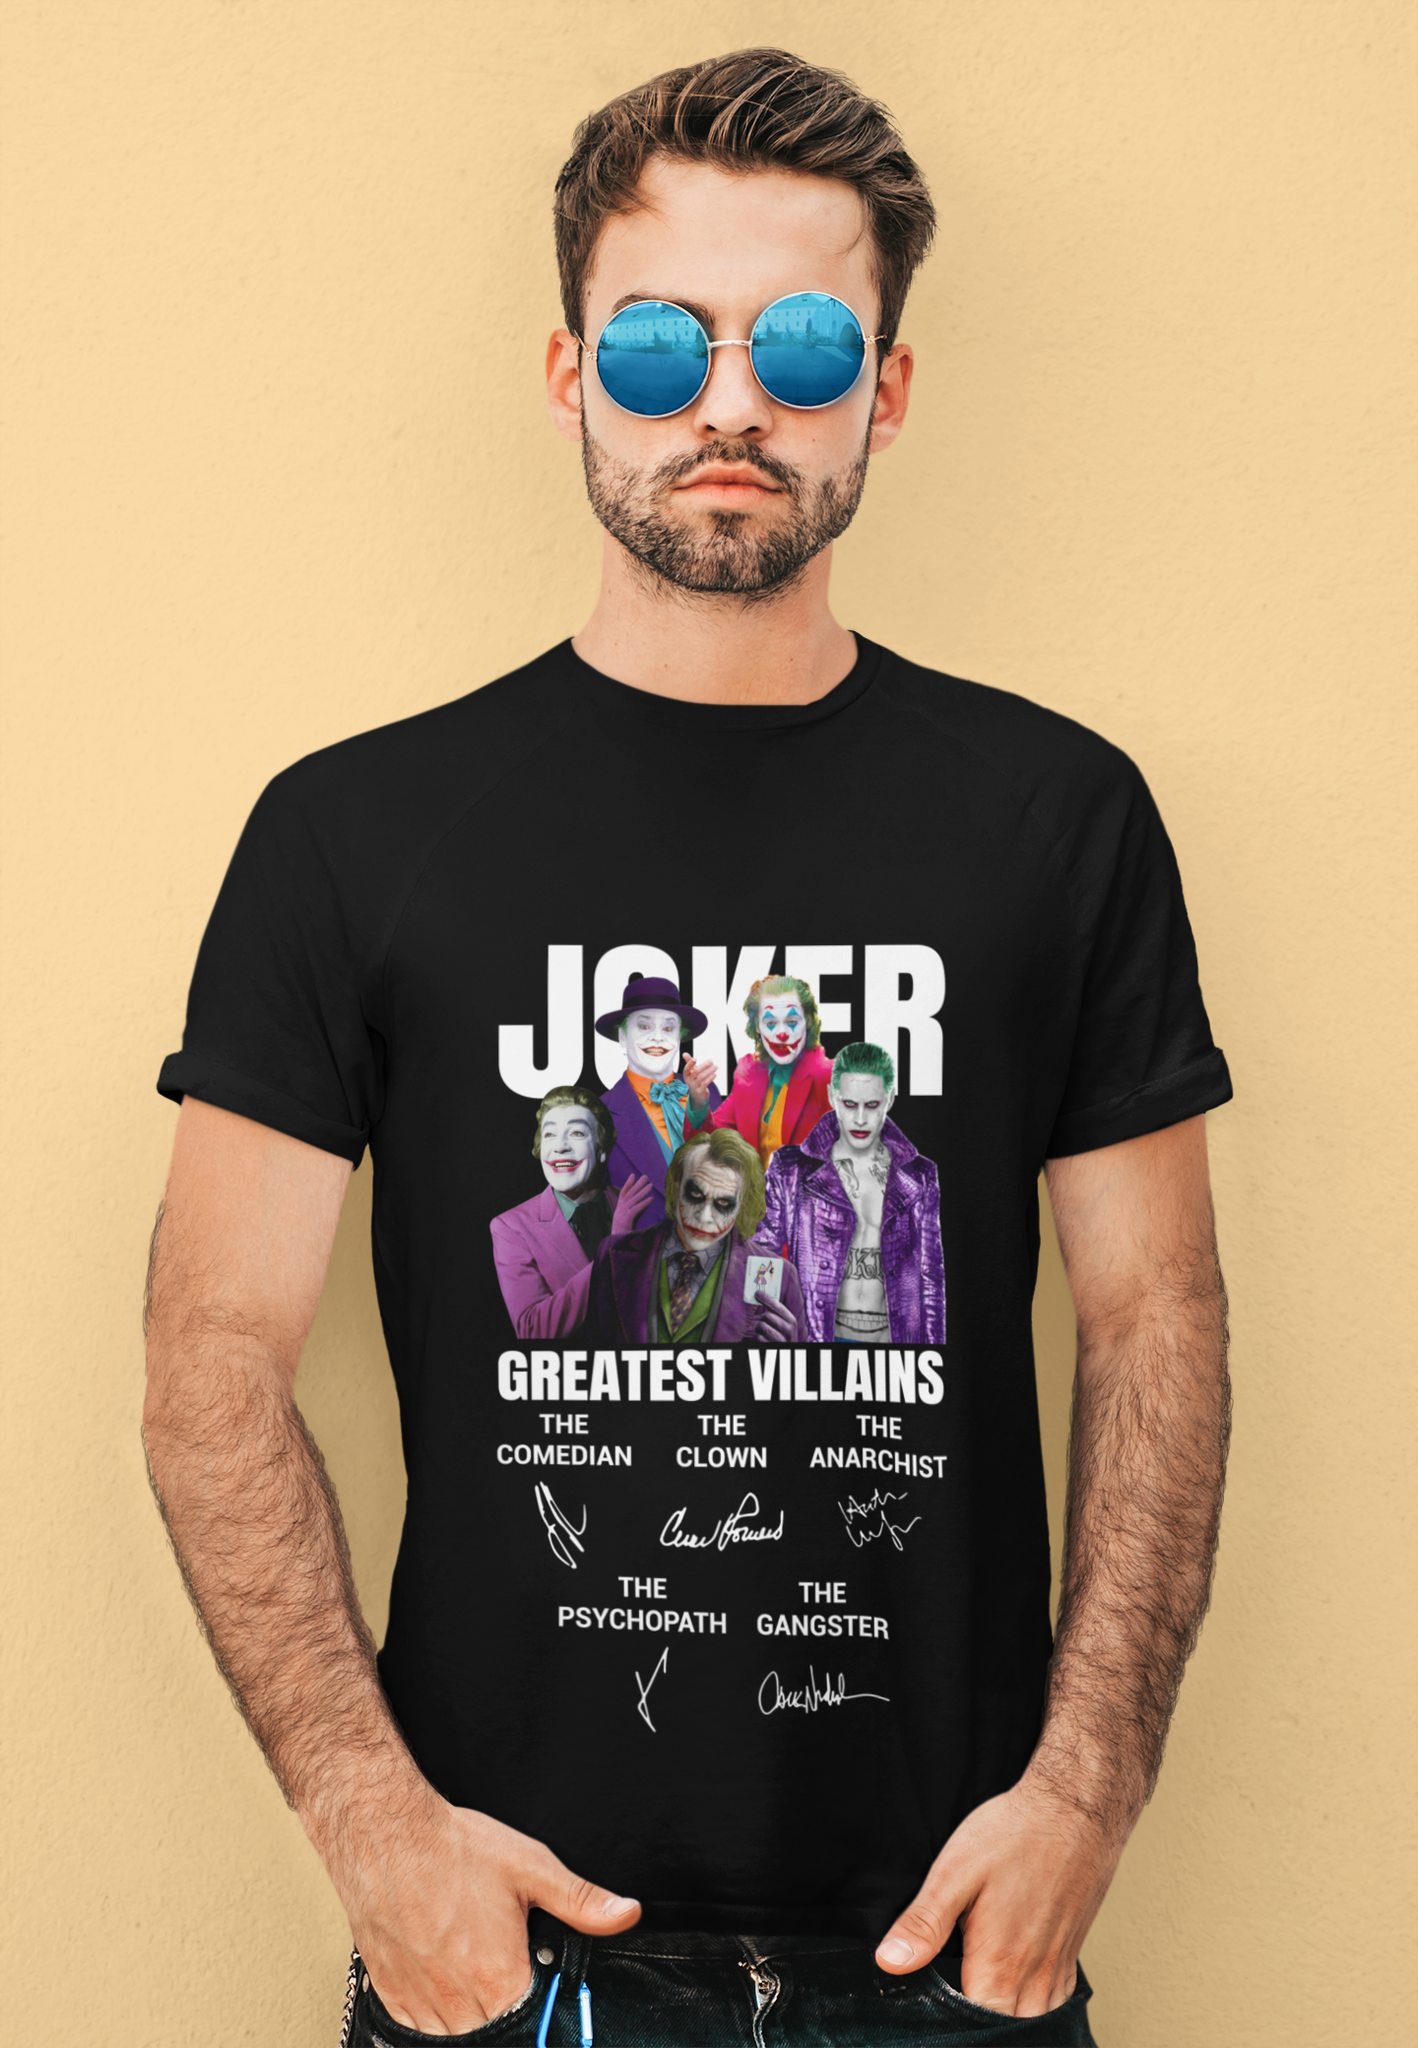 Joker T Shirt, The Maniac Comedian Psychopath Anarchist Clown Tshirt, Joker Greatest Villains Shirt, Halloween Gifts